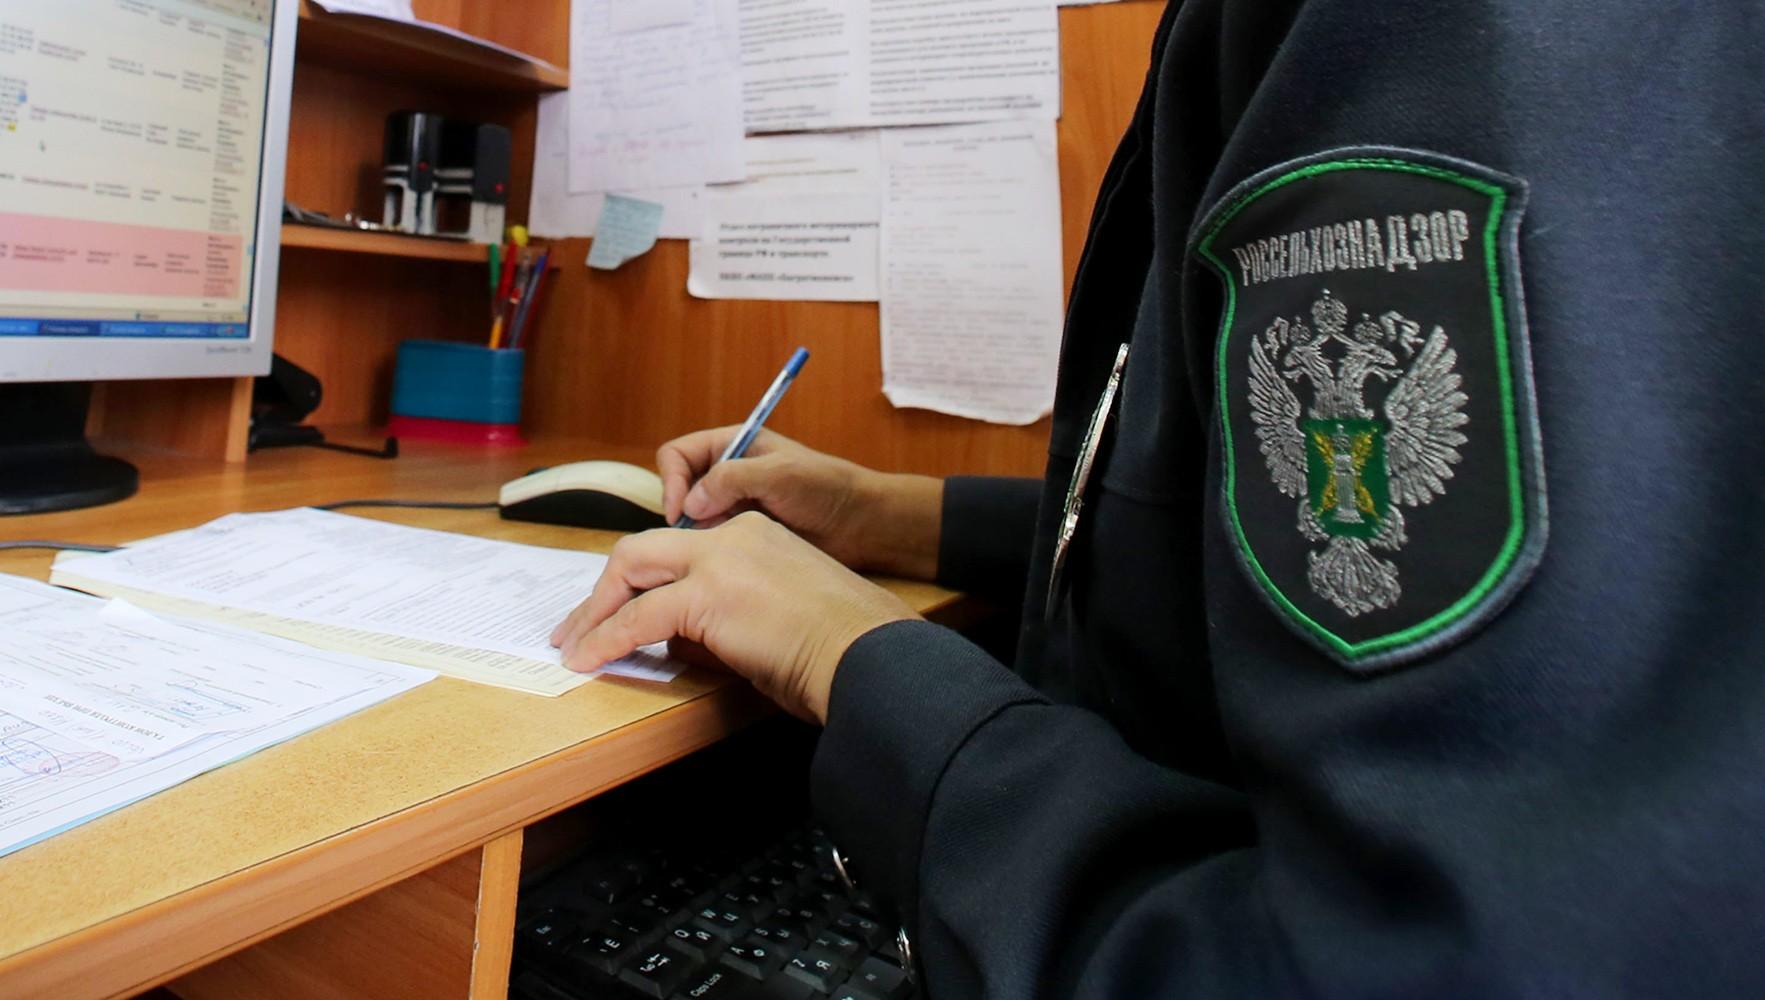 В Тверской области юридическому лицу направлено предостережение в связи с зарастанием свыше 850 гектаров сельхозугодий